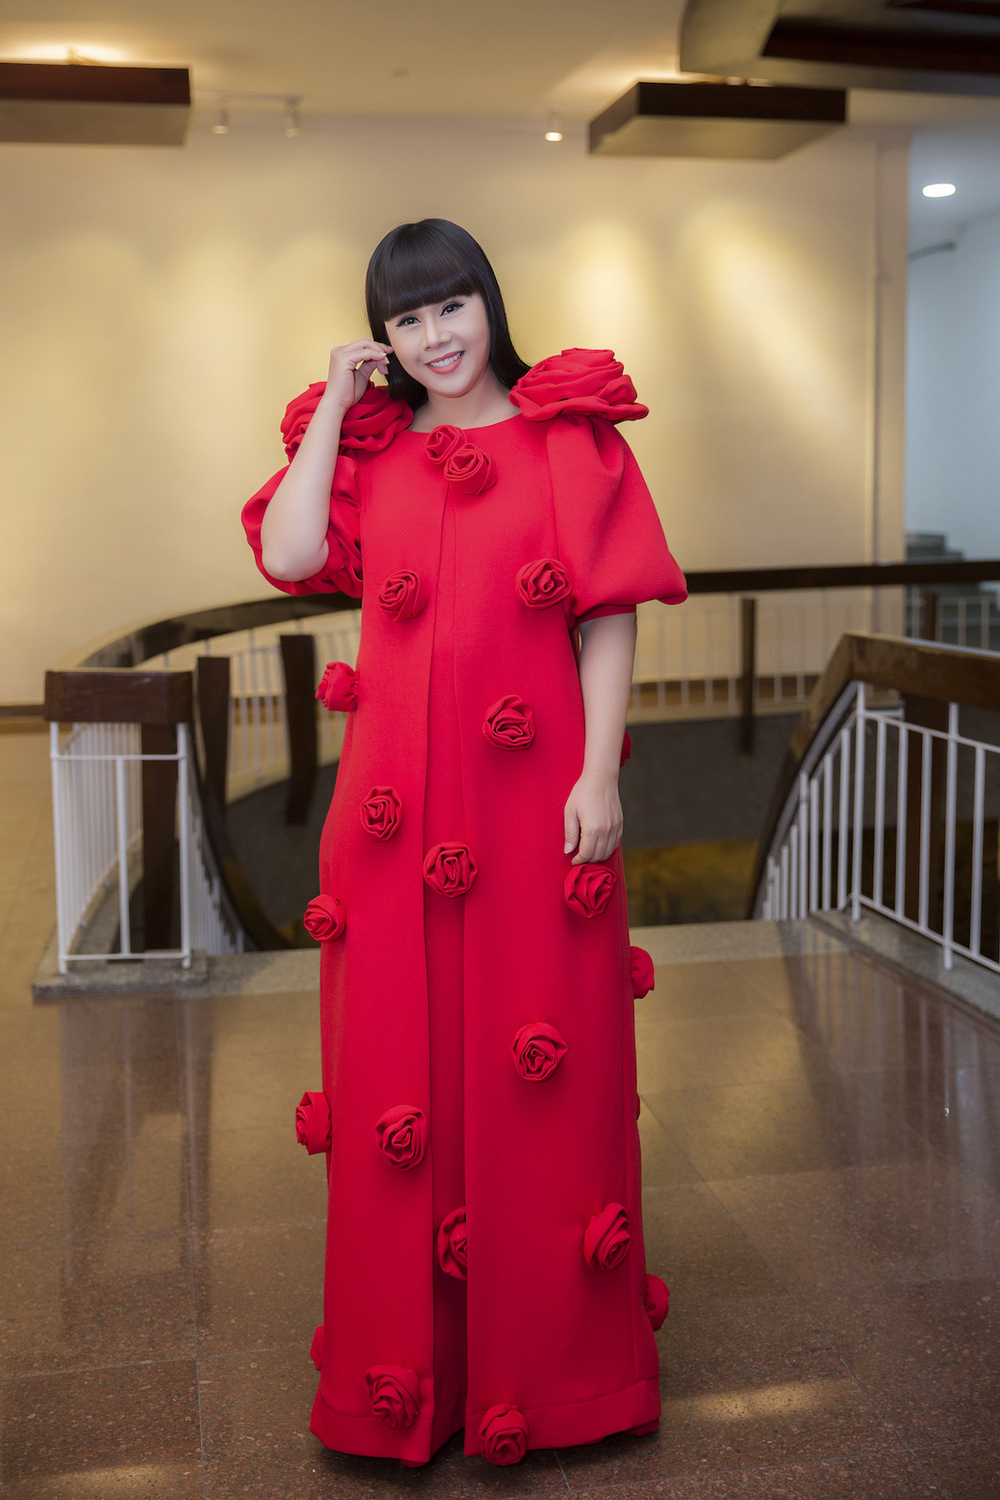 
Hằng Nguyễn ngoài việc được biết đến như một Hoa hậu, doanh nhân thành đạt, cô còn là một nhà thiết kế thời trang.